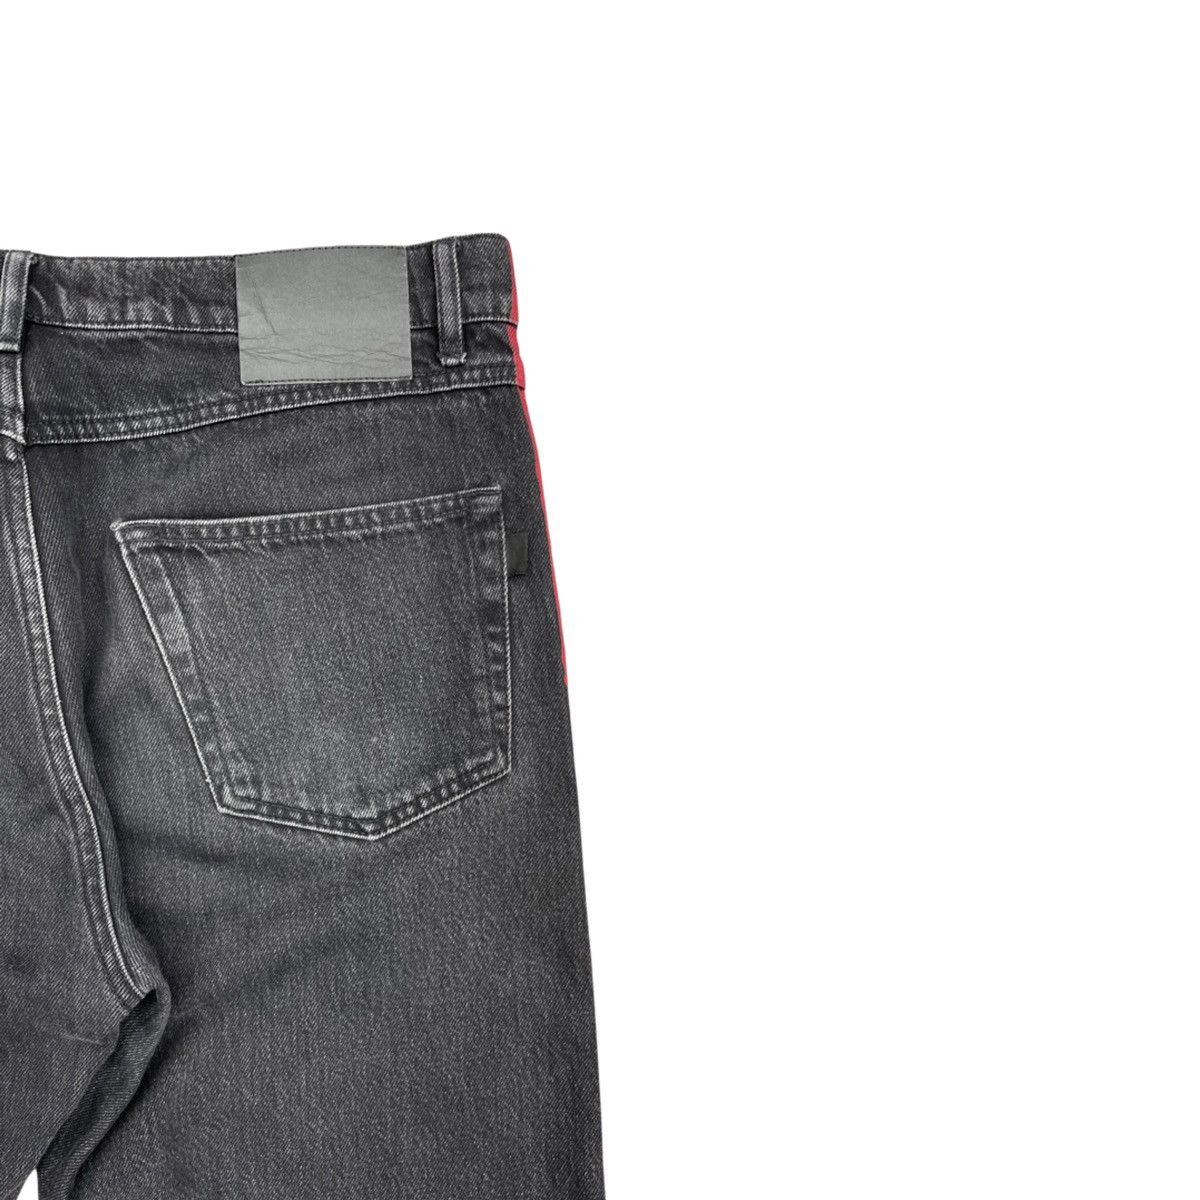 Balenciaga SS17 Red Stripe Jeans Size US 32 / EU 48 - 17 Thumbnail